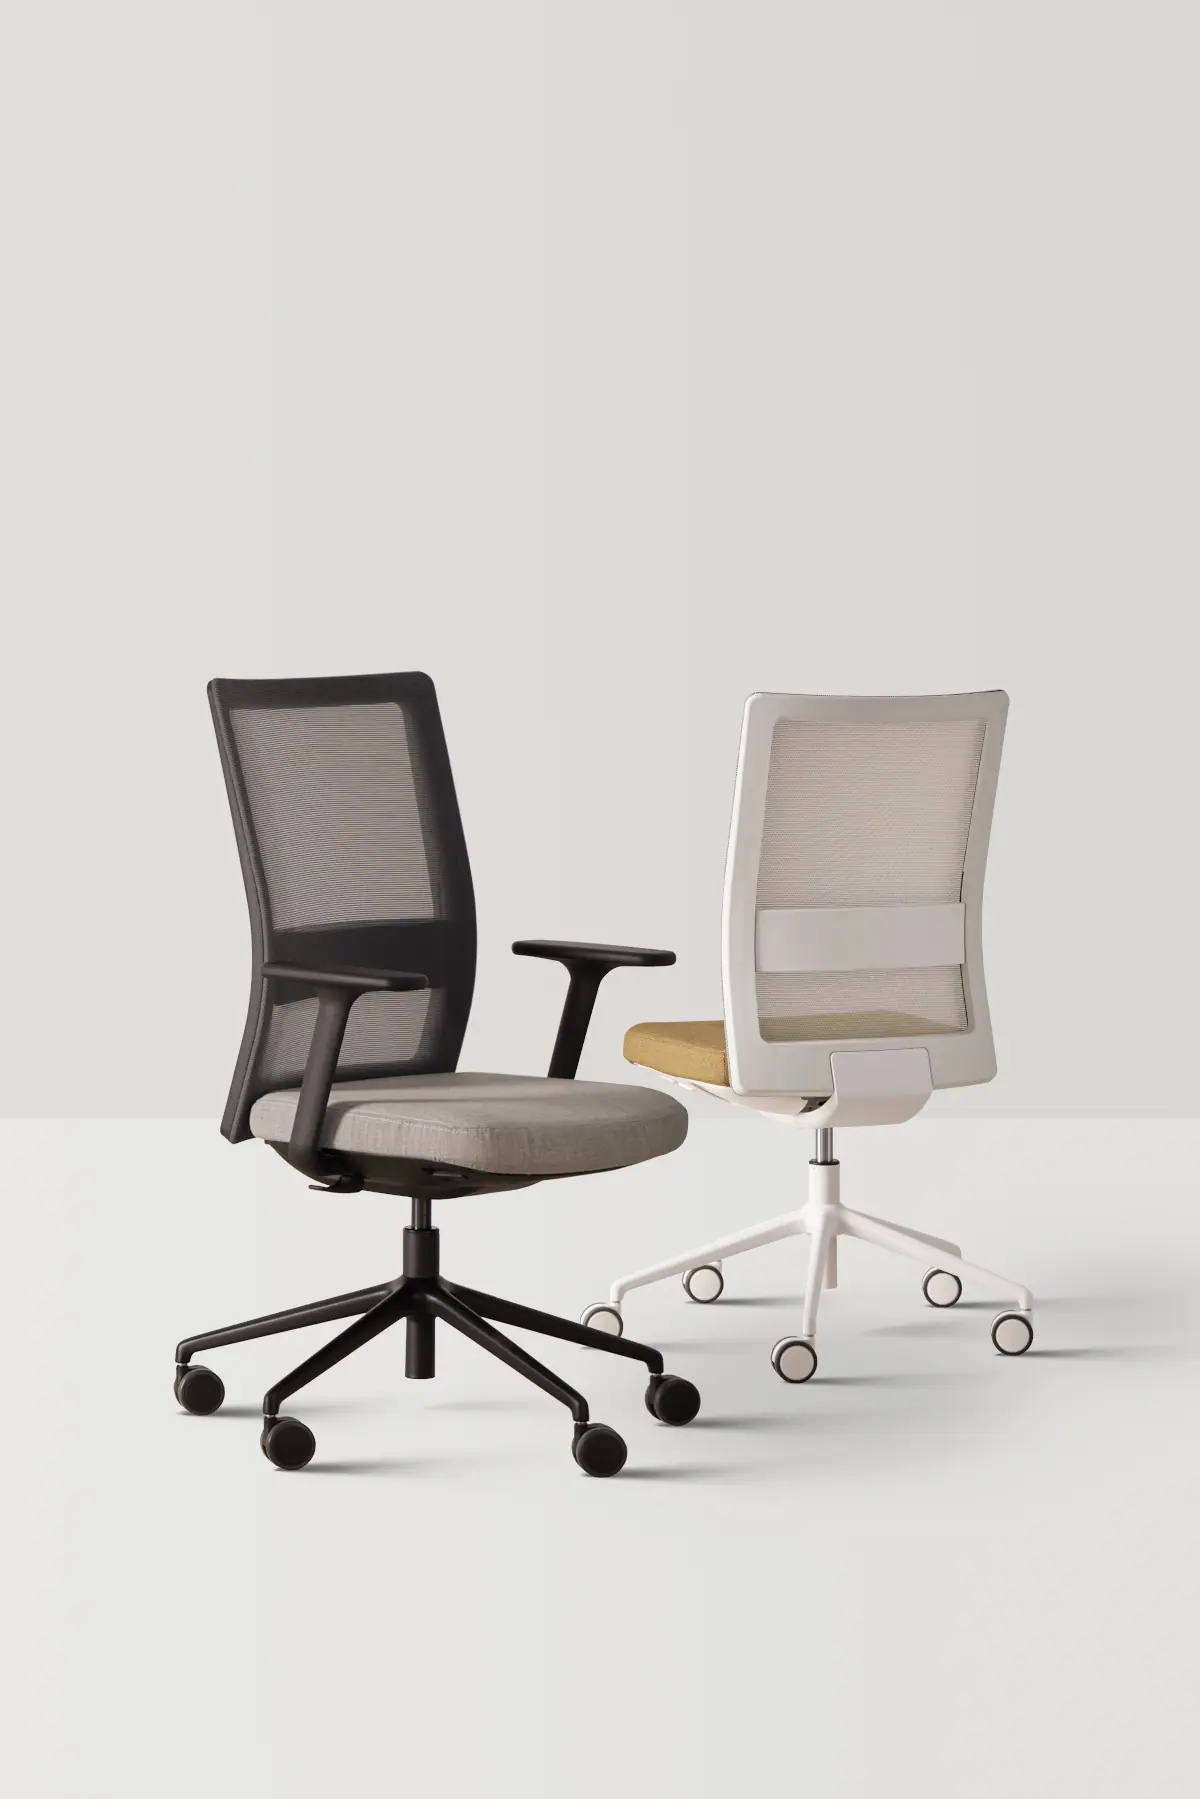 83719-83717-itek-pro-chair